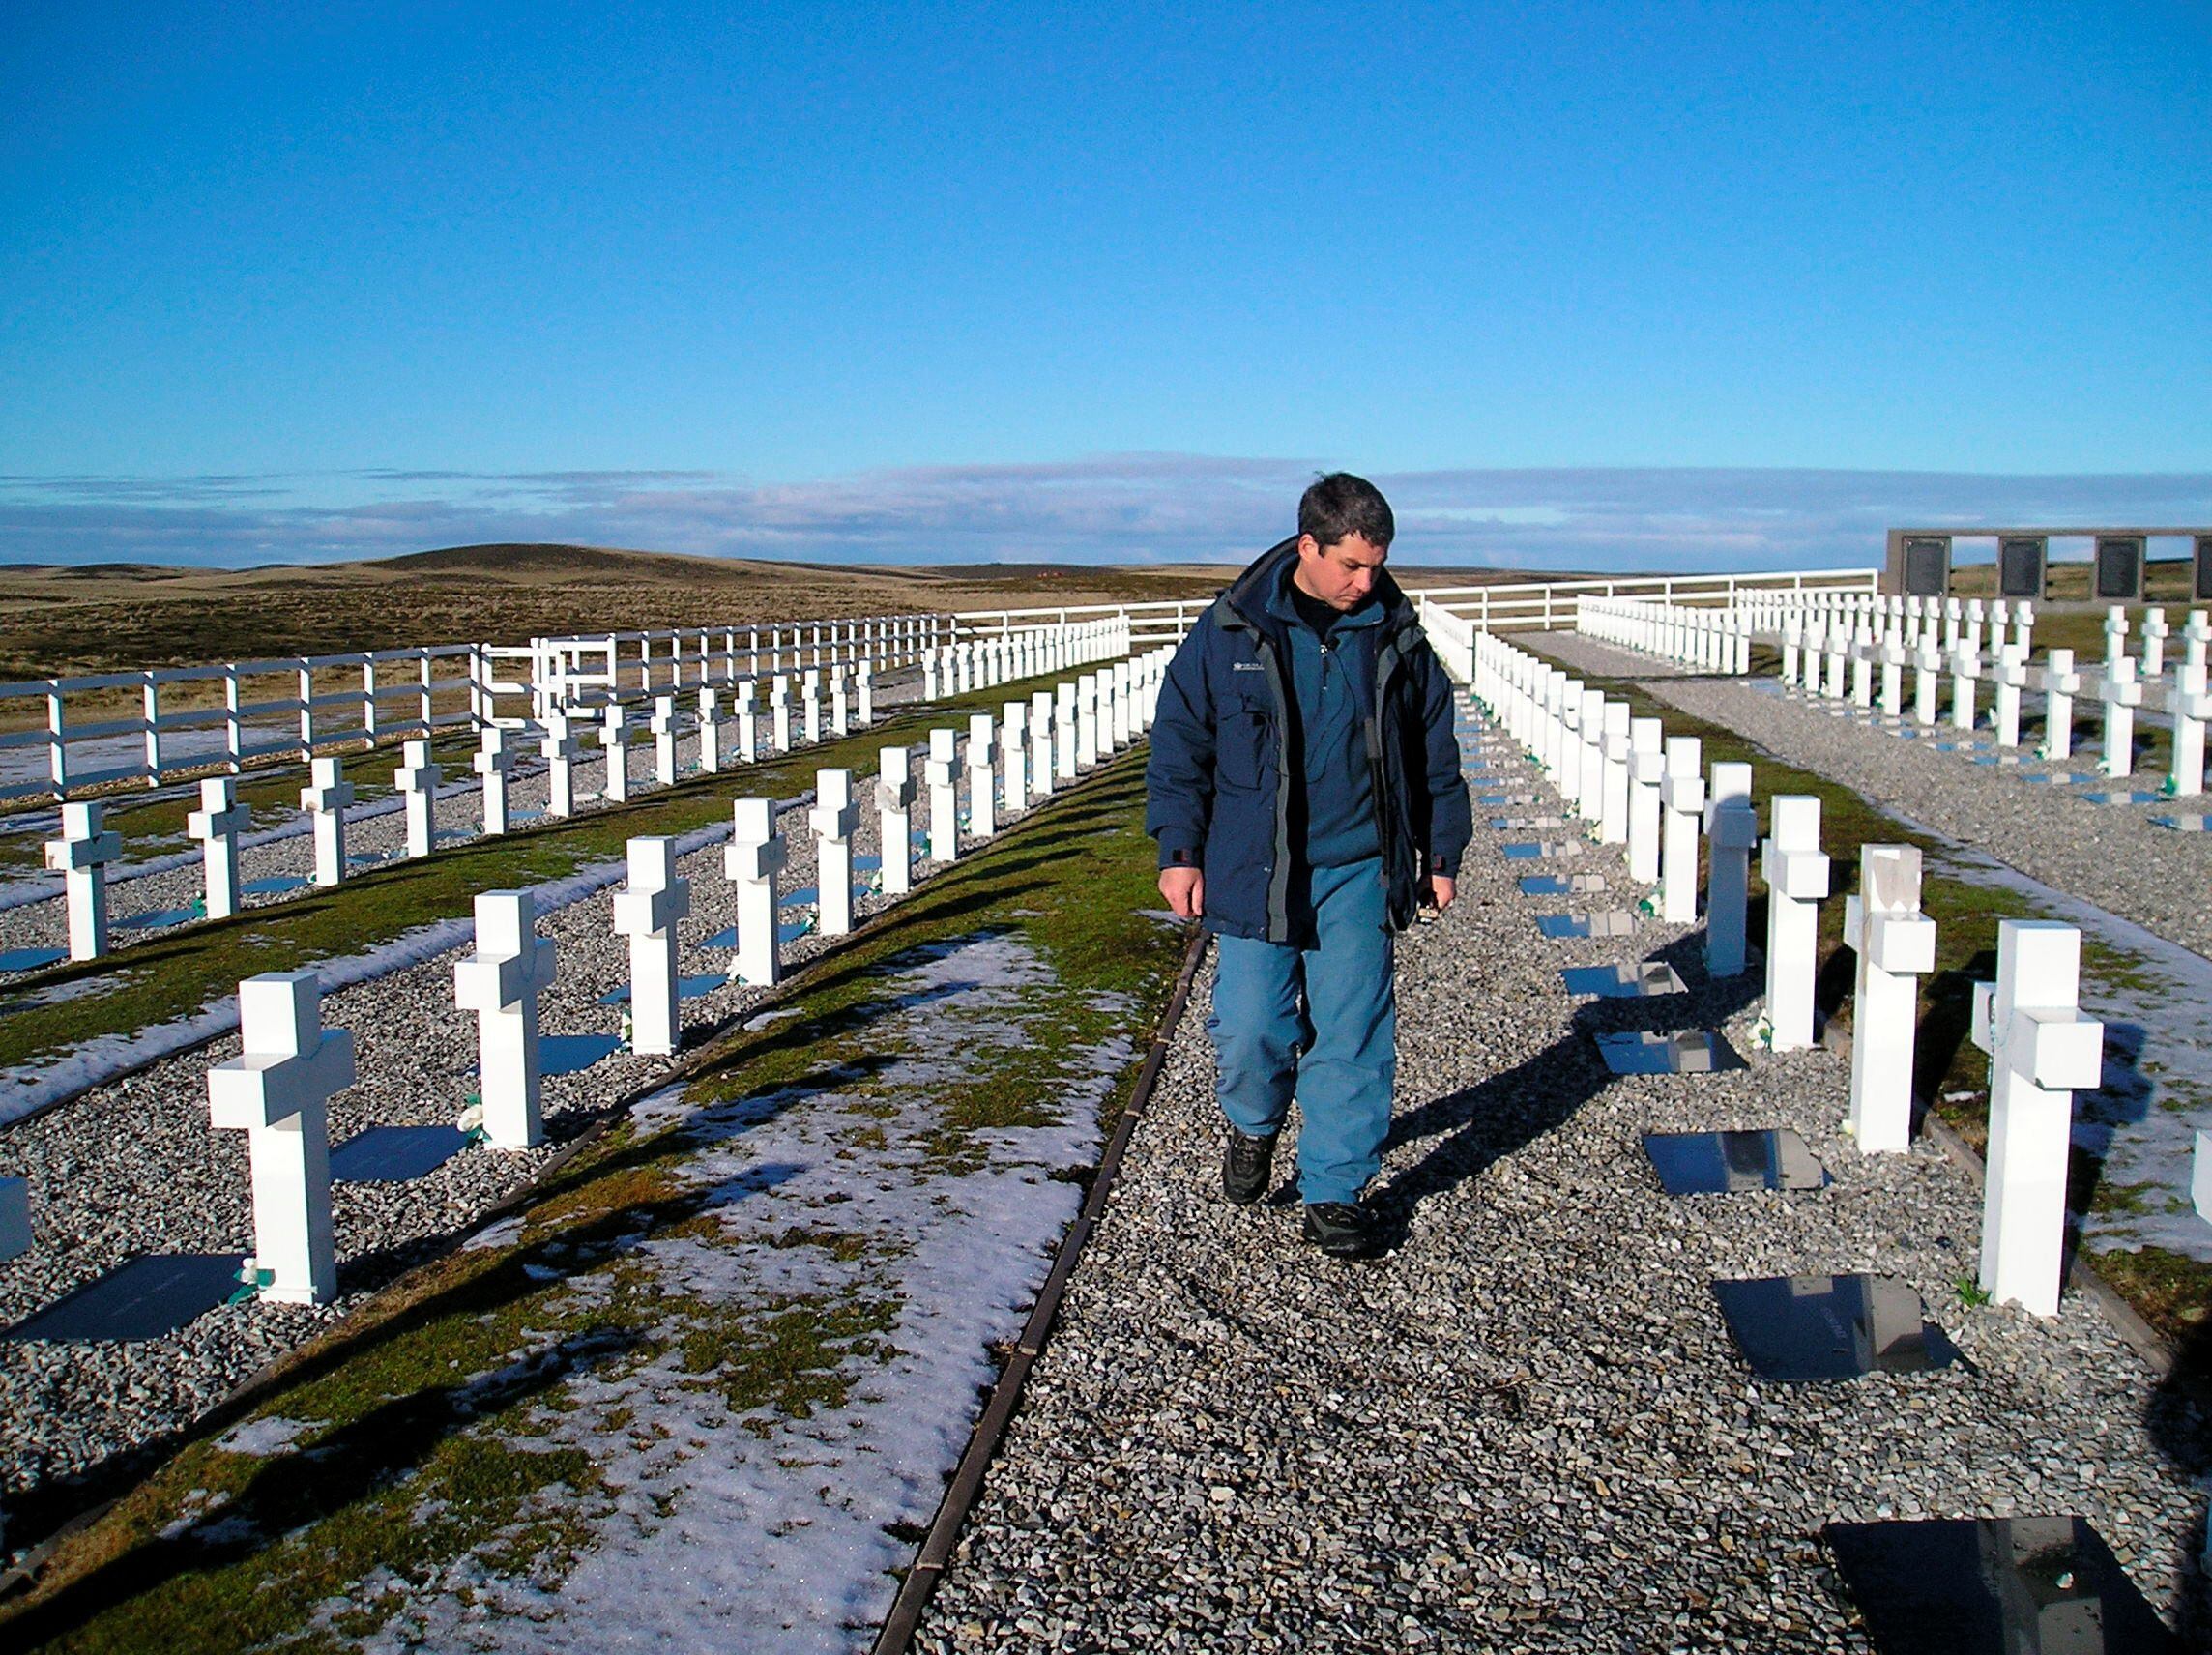 Durante la guerra de Malvinas murieron 649 soldados argentinos, 255 británicos y 3 civiles de las islas (Ho New)